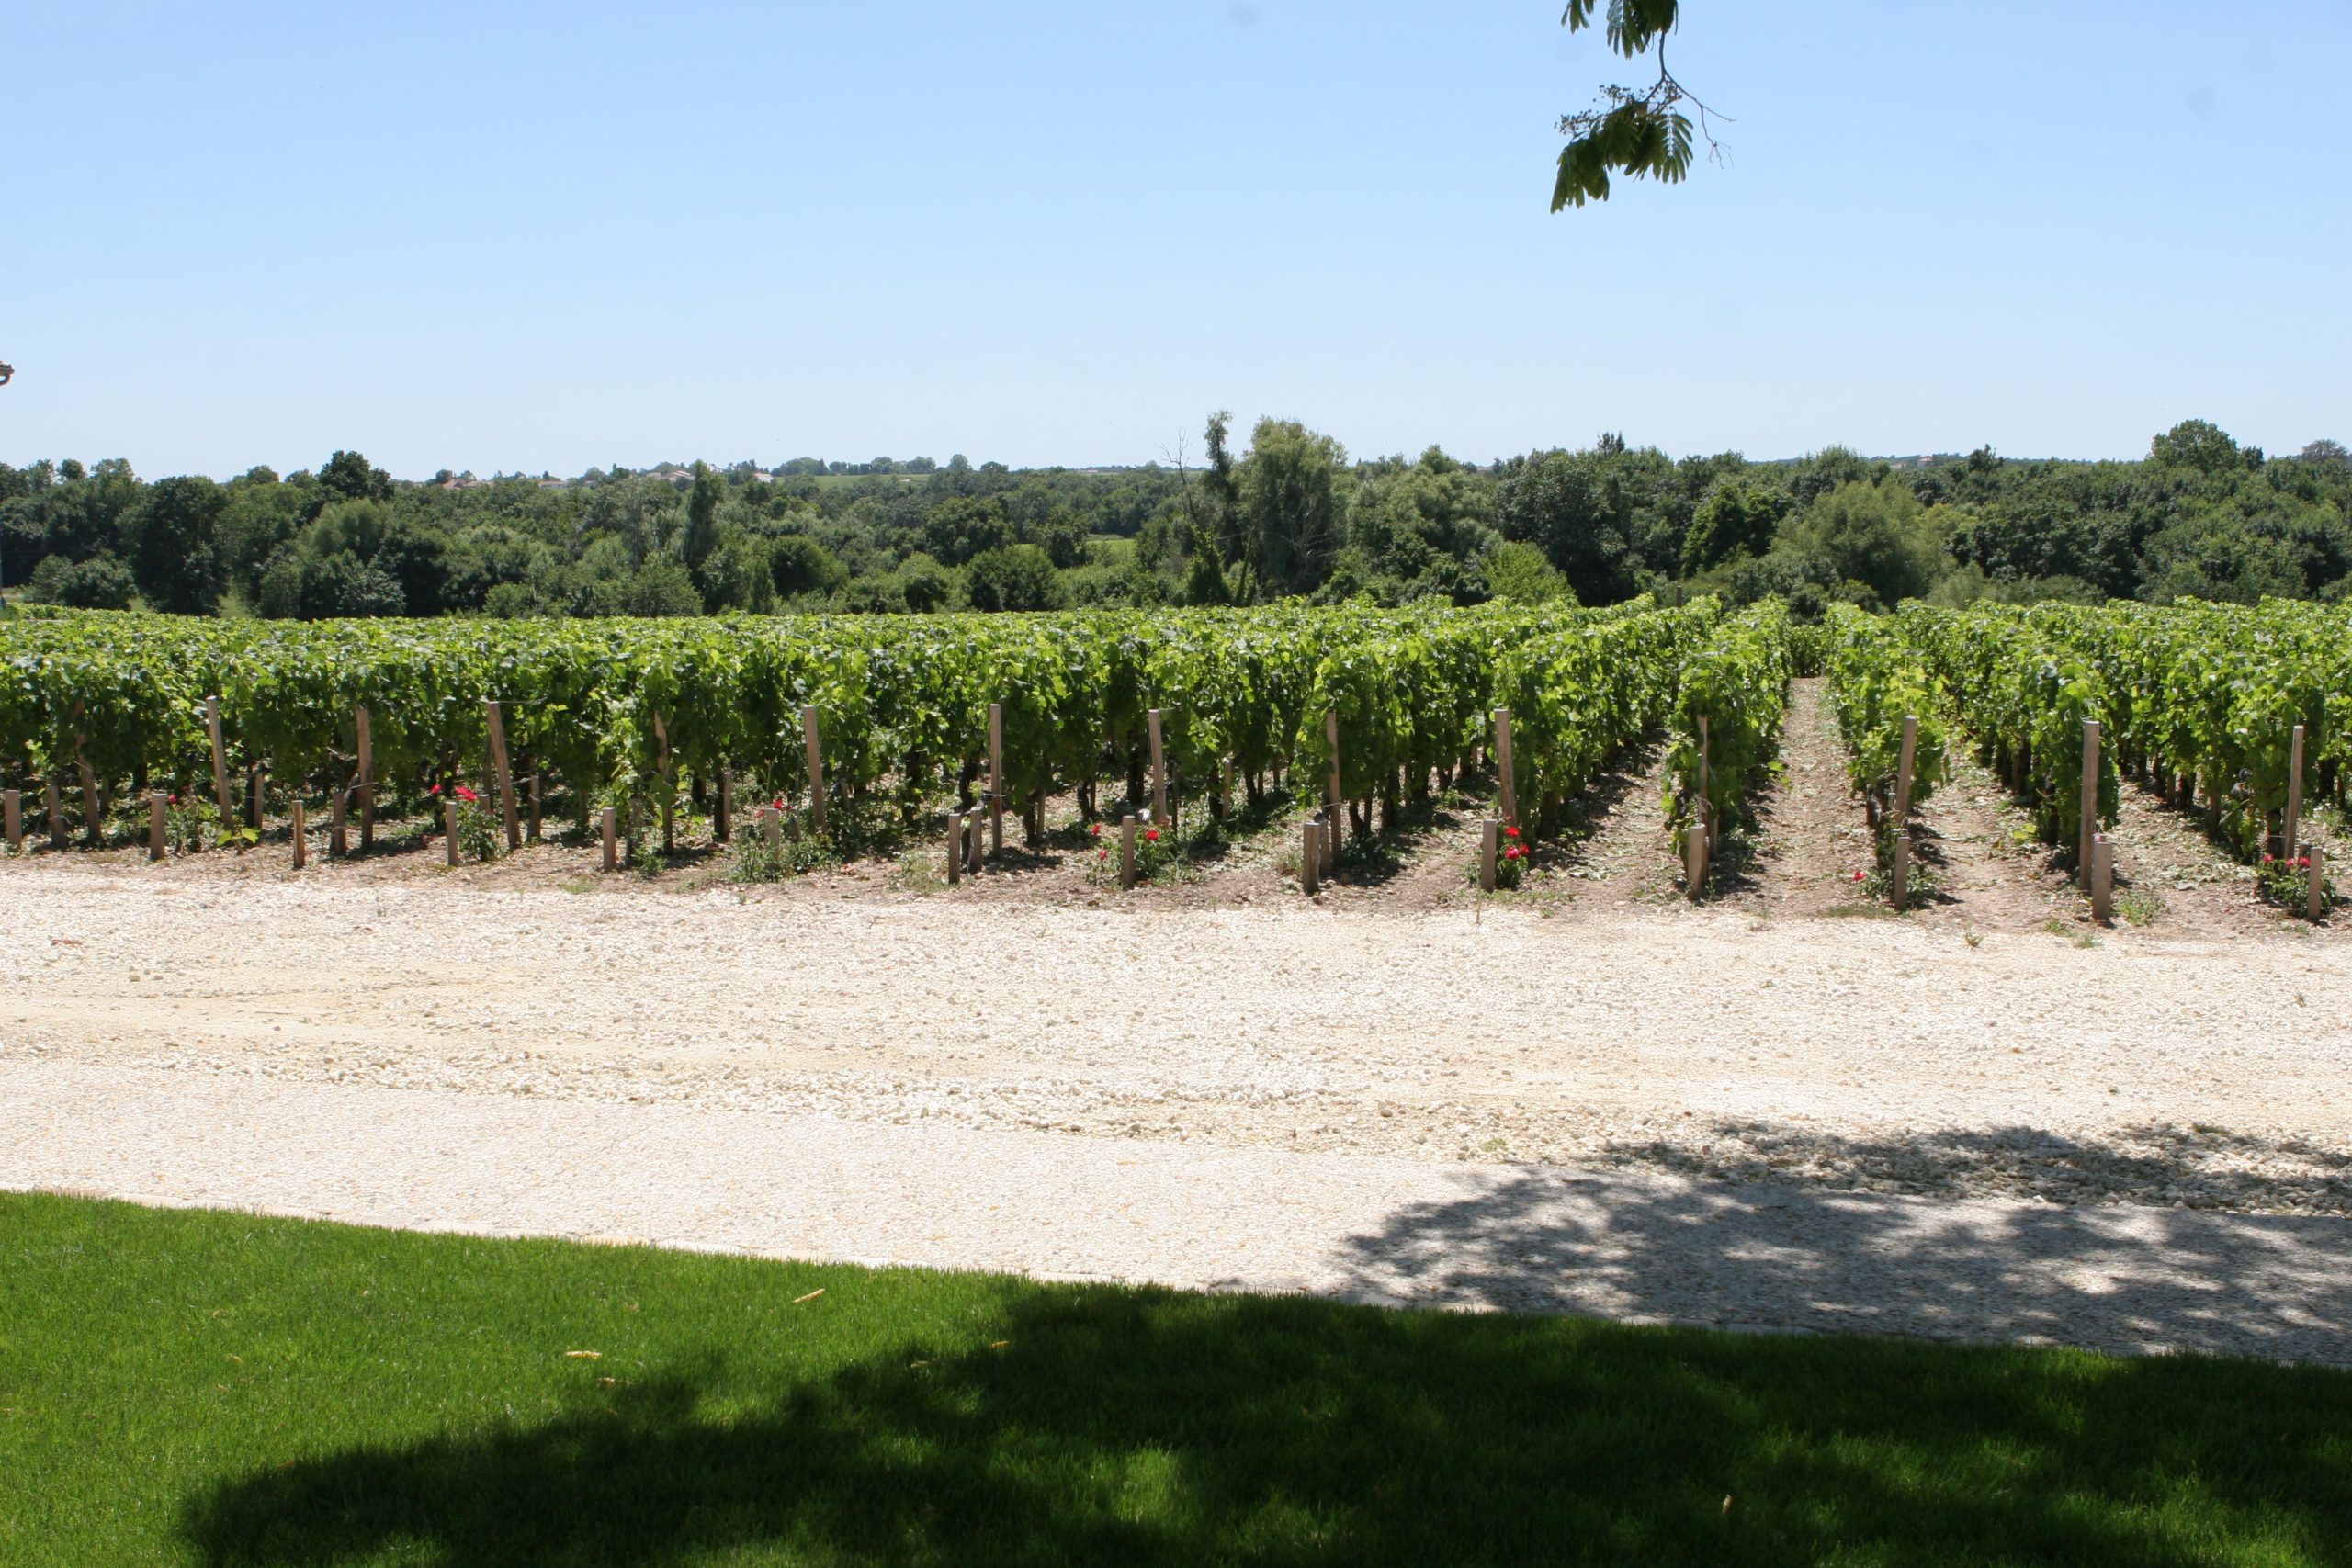 Chateau Haut Marbuzet vineyards